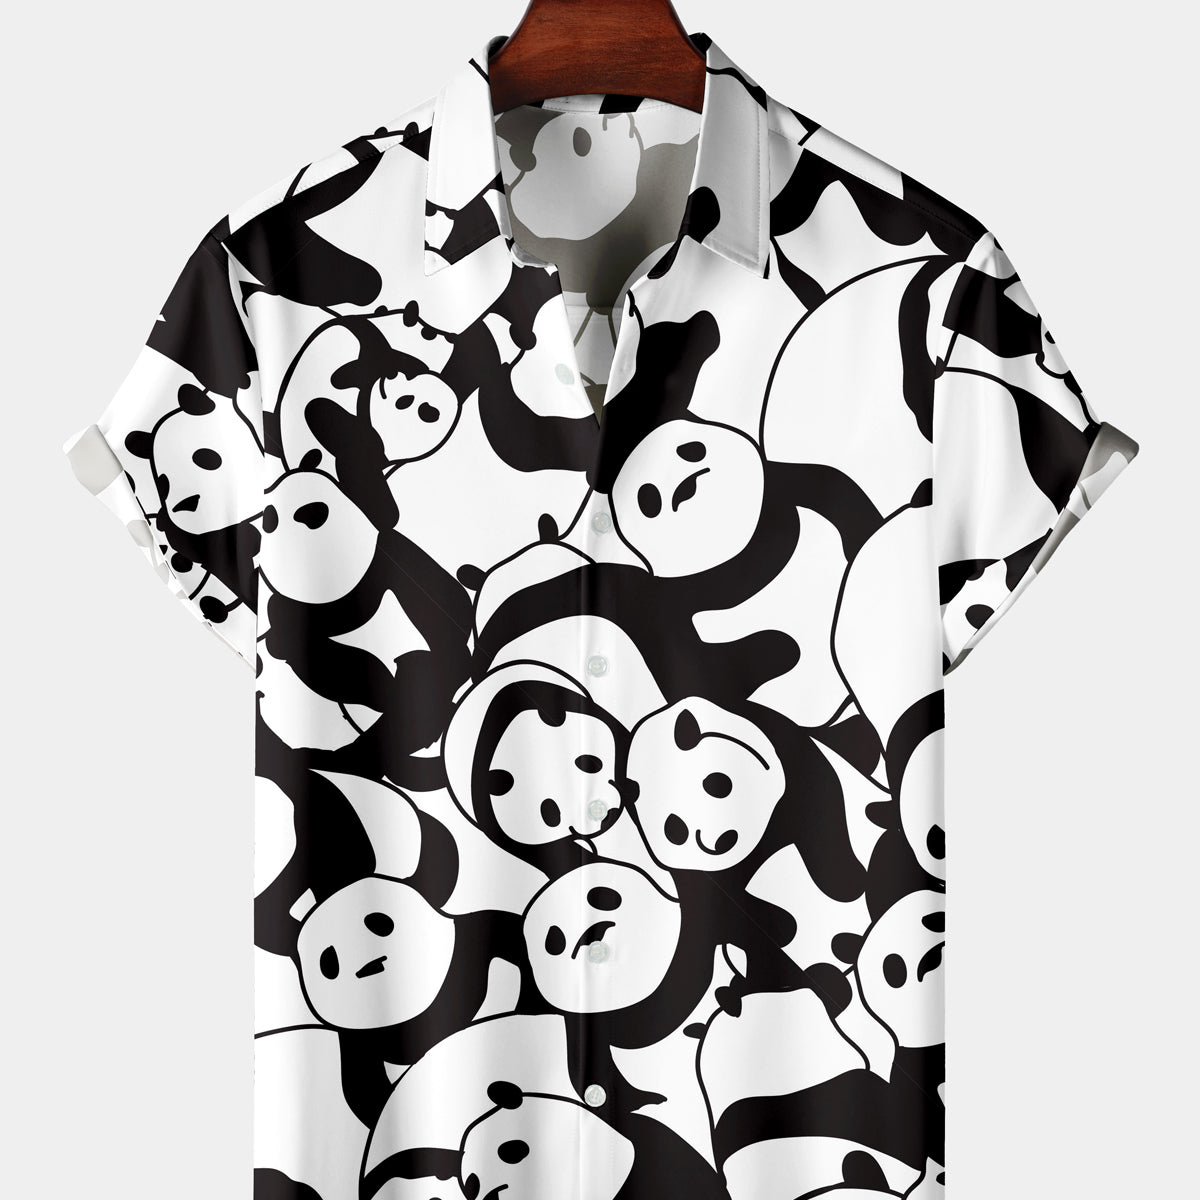 Men's Cartoon Casual Panda Short Sleeve Shirt